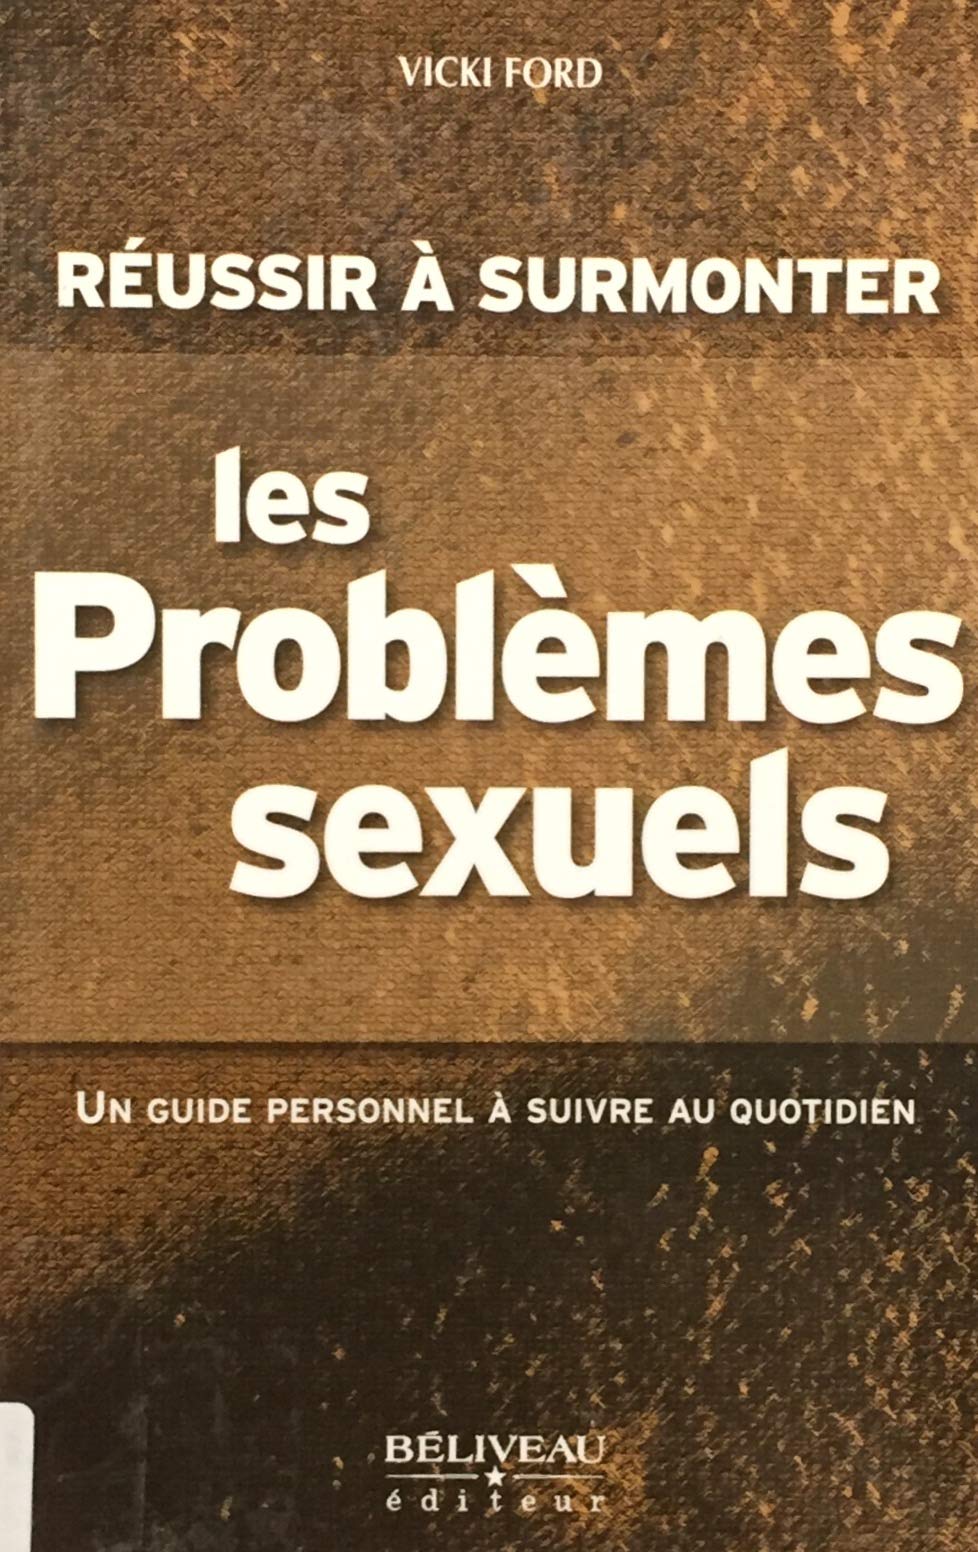 Livre ISBN 2890924130 Réussir à surmonter les problèmes sexuels : Un guide personnel à suivre au quotidien (Vicki Ford)